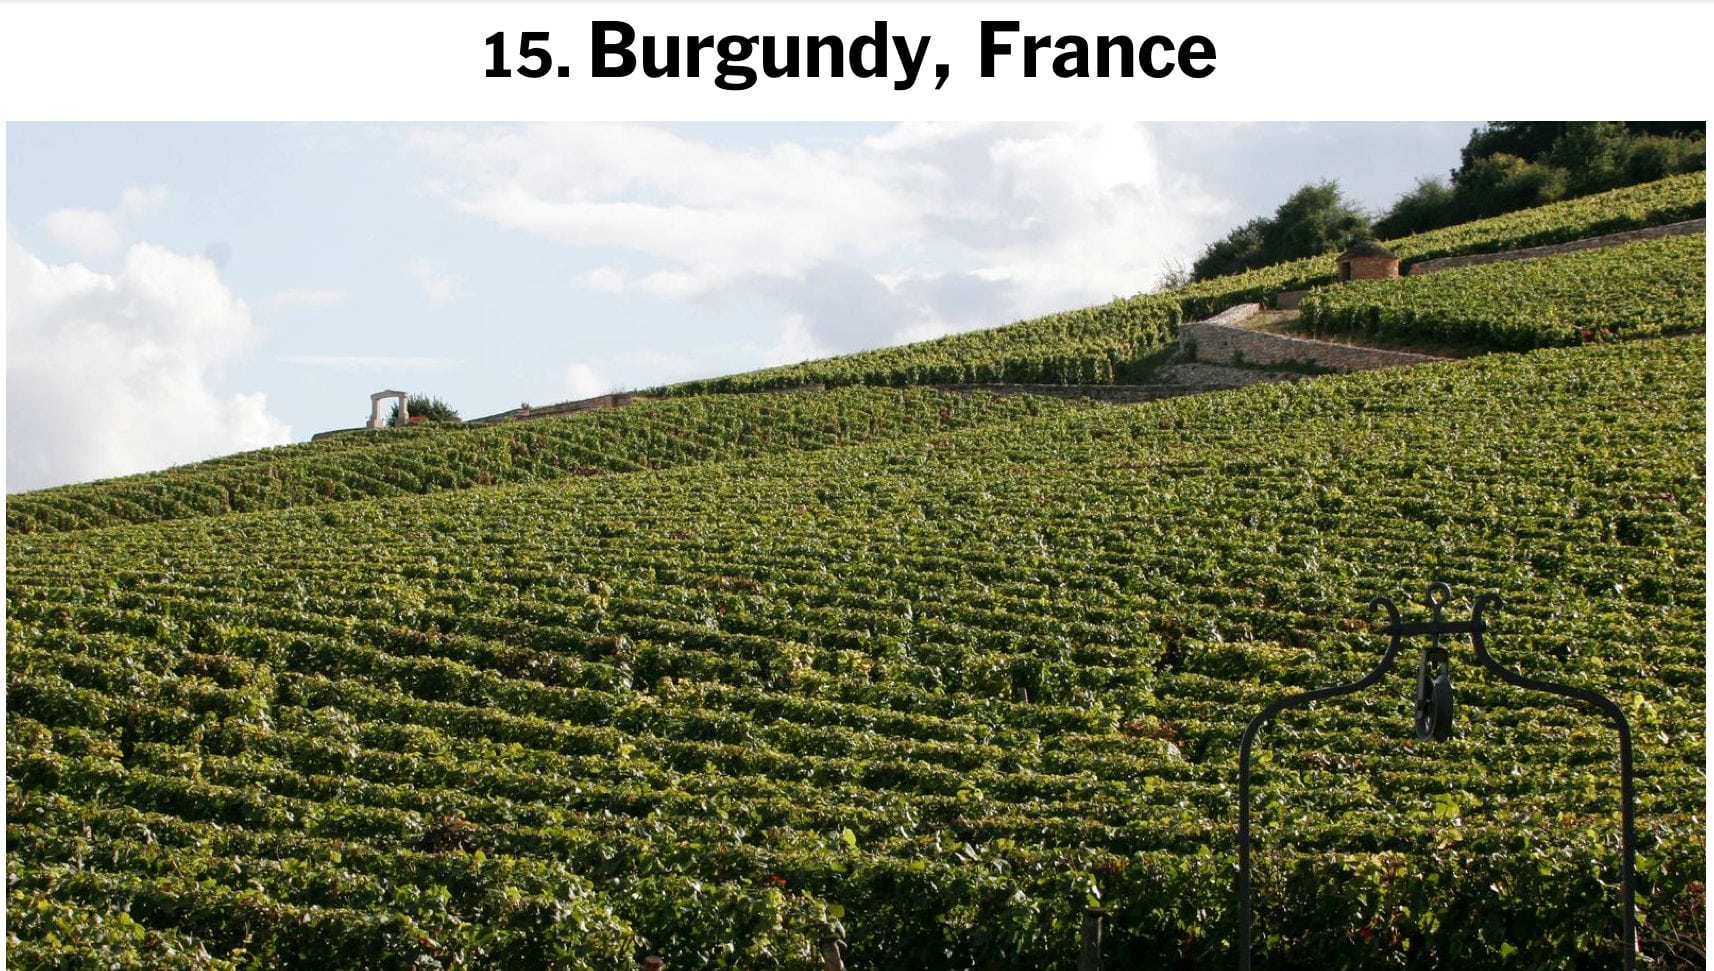 La Bourgogne au top selon le New York Times